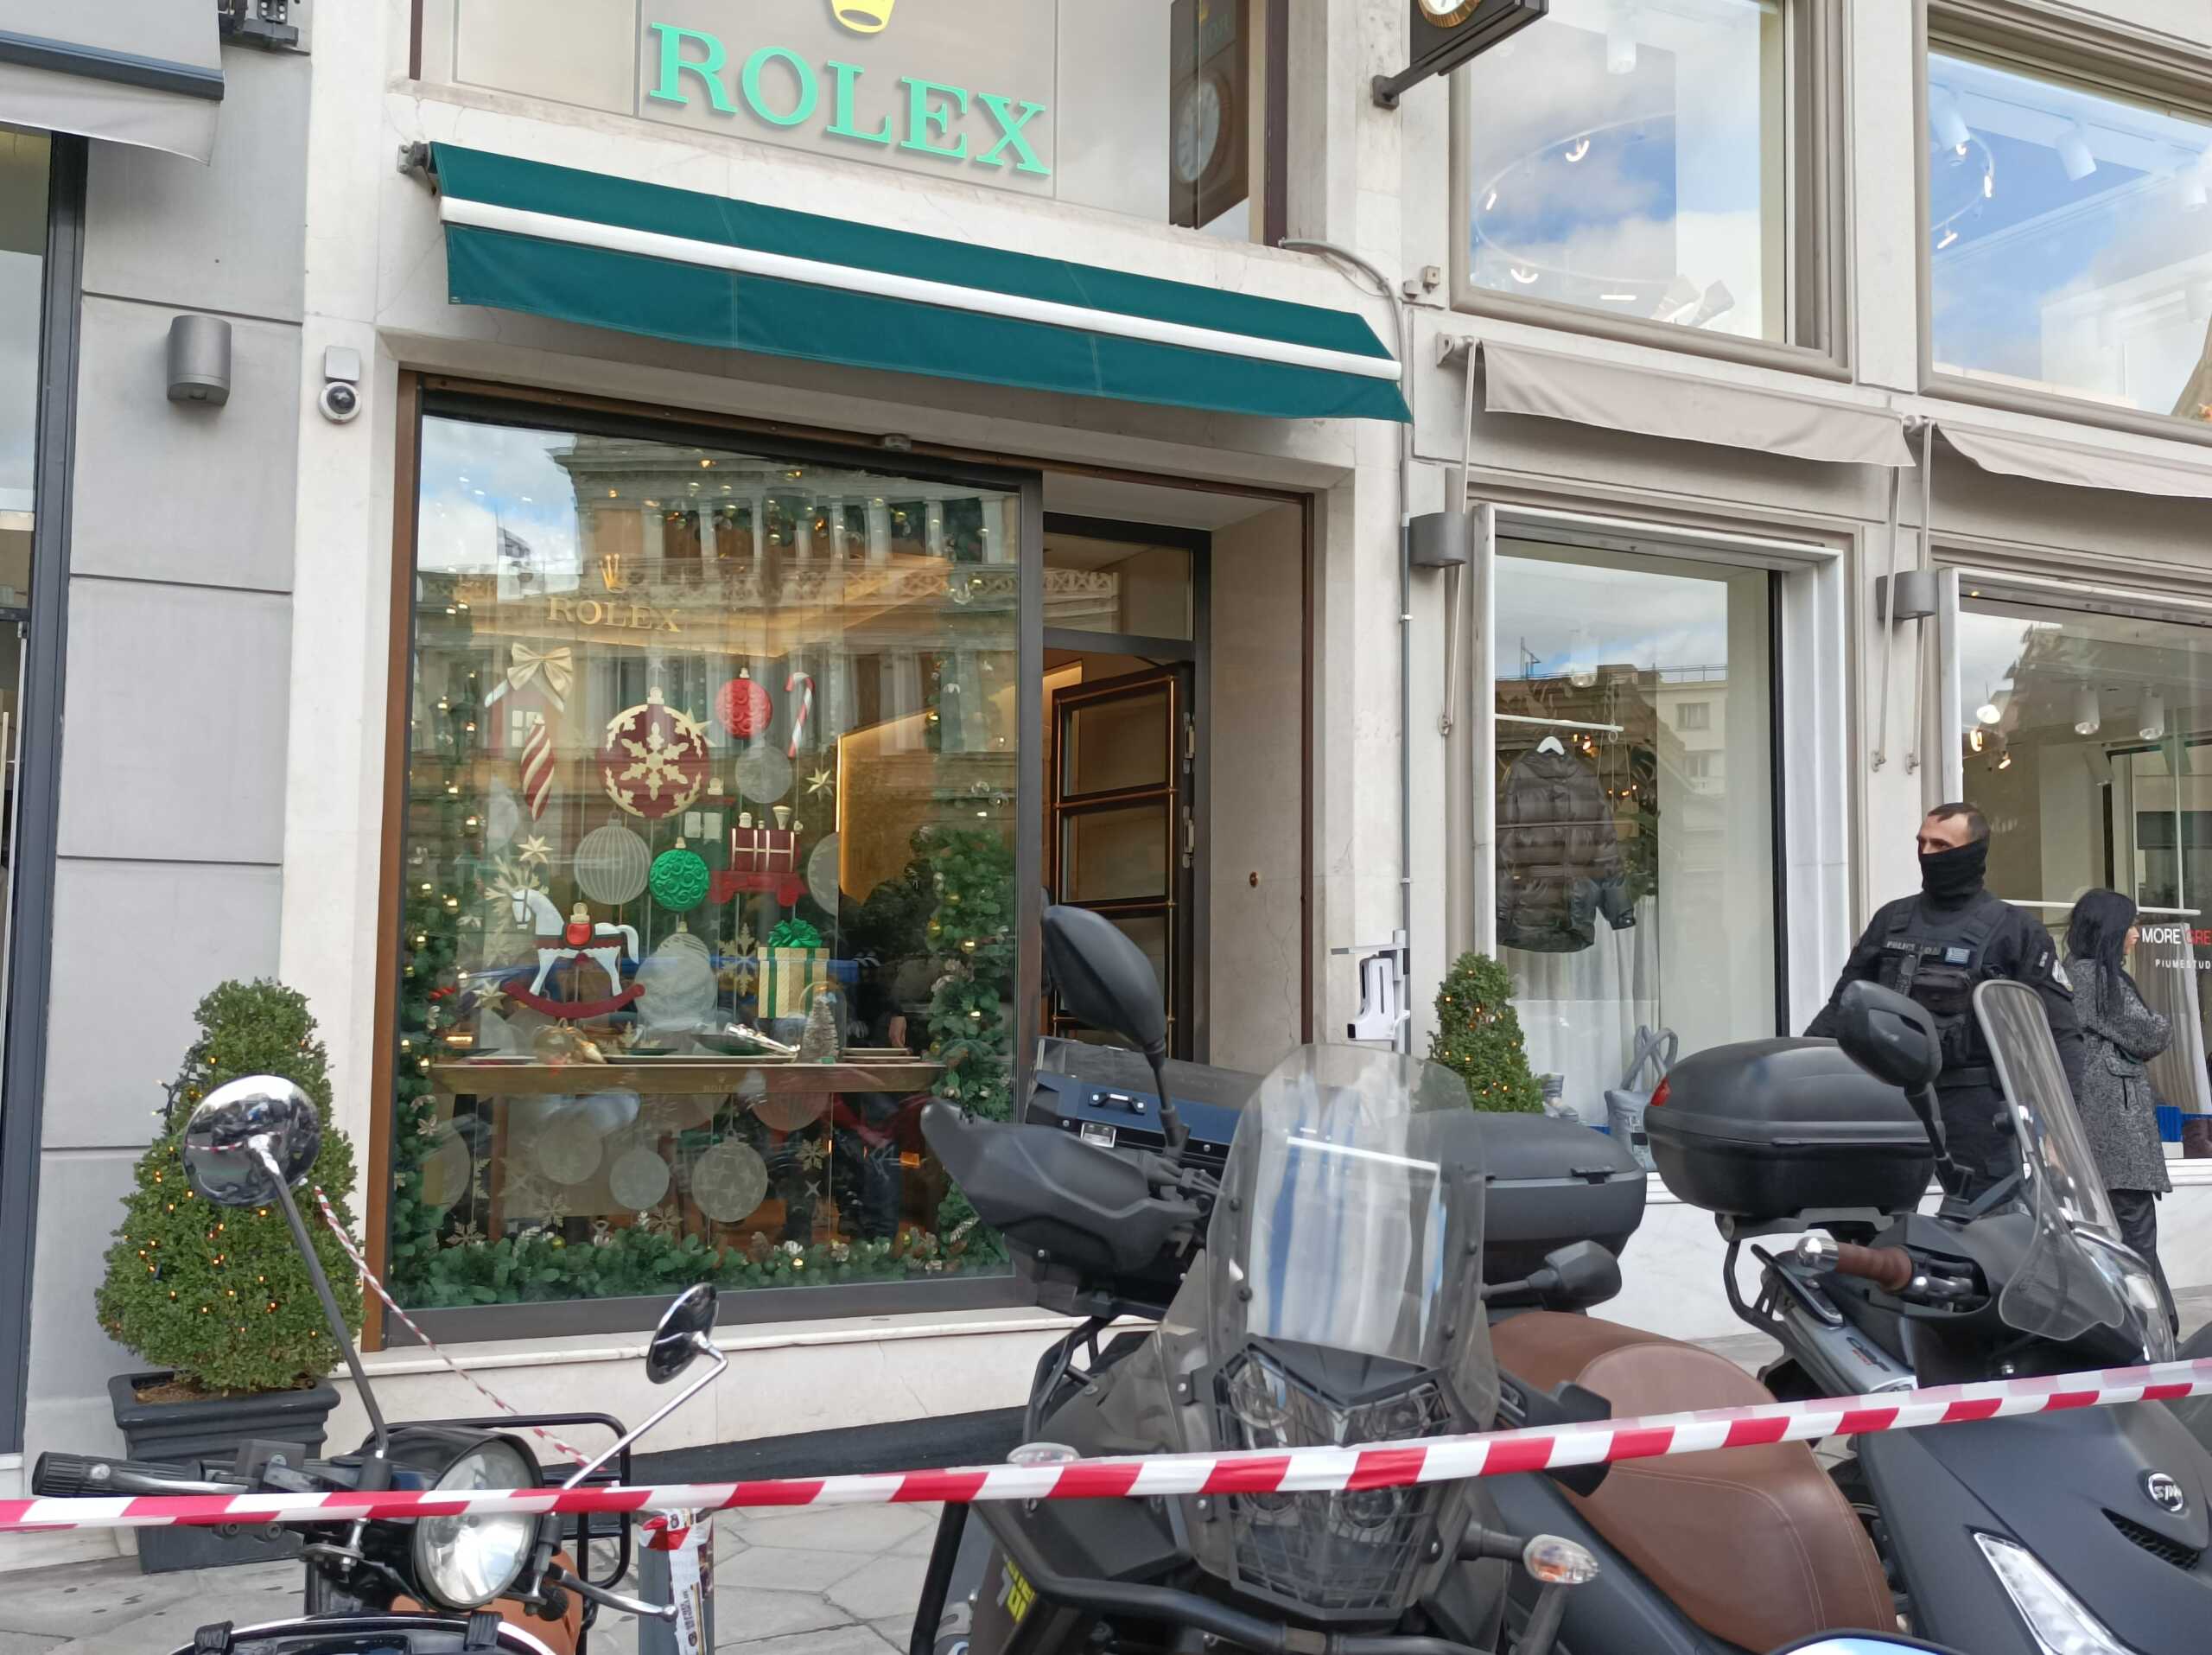 Ληστεία στη Rolex: Η πορεία διαφυγής των ληστών – Πού άφησαν τη μηχανή